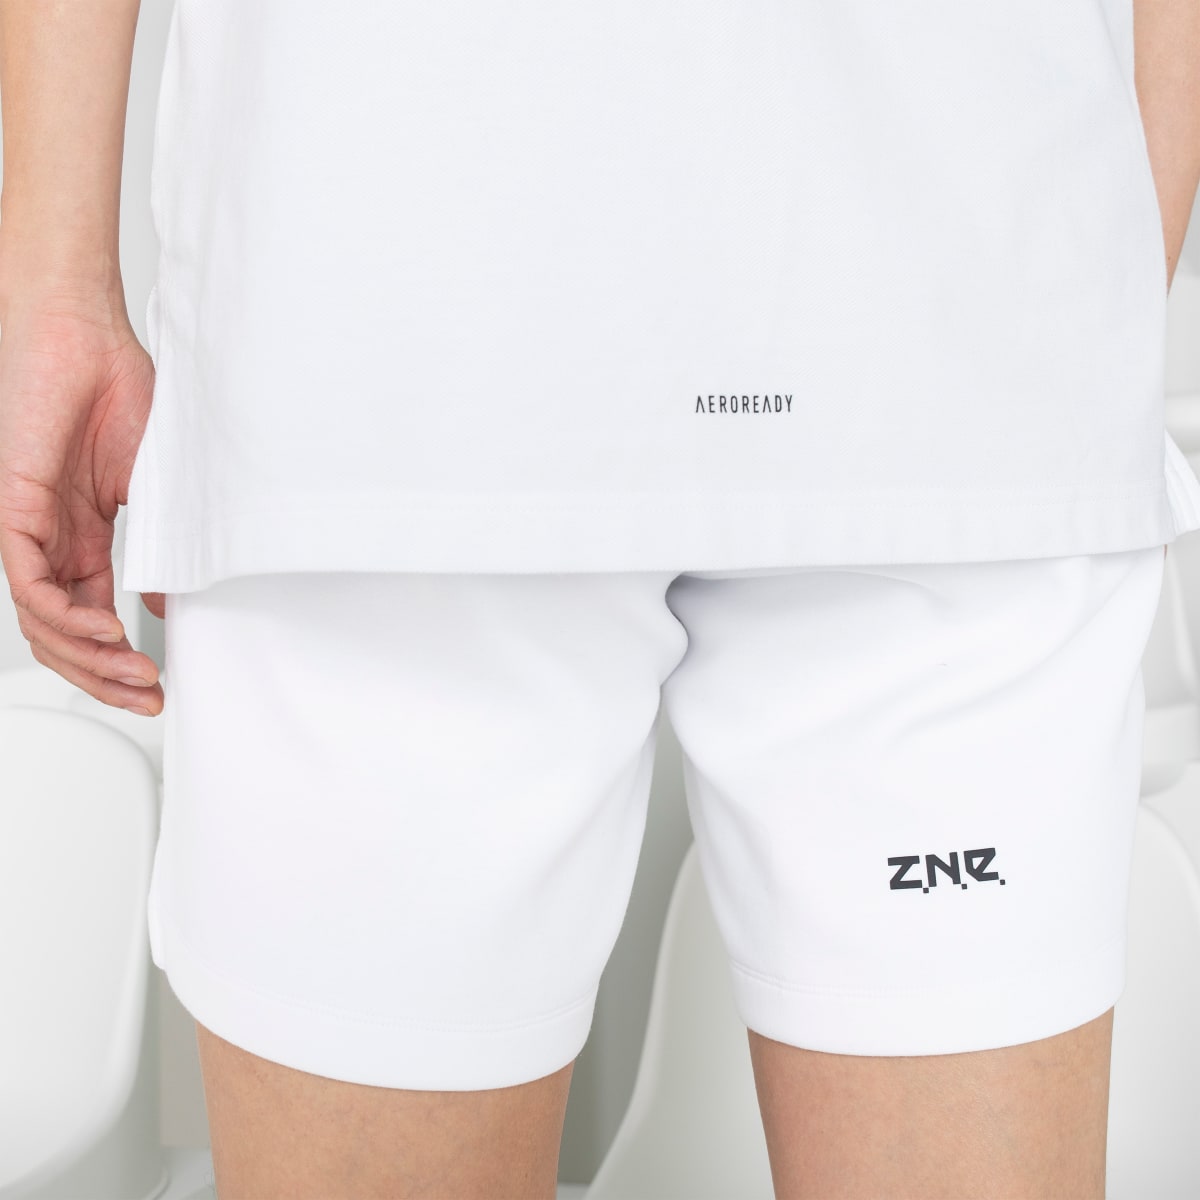 Adidas Z.N.E. Premium Shorts. 8